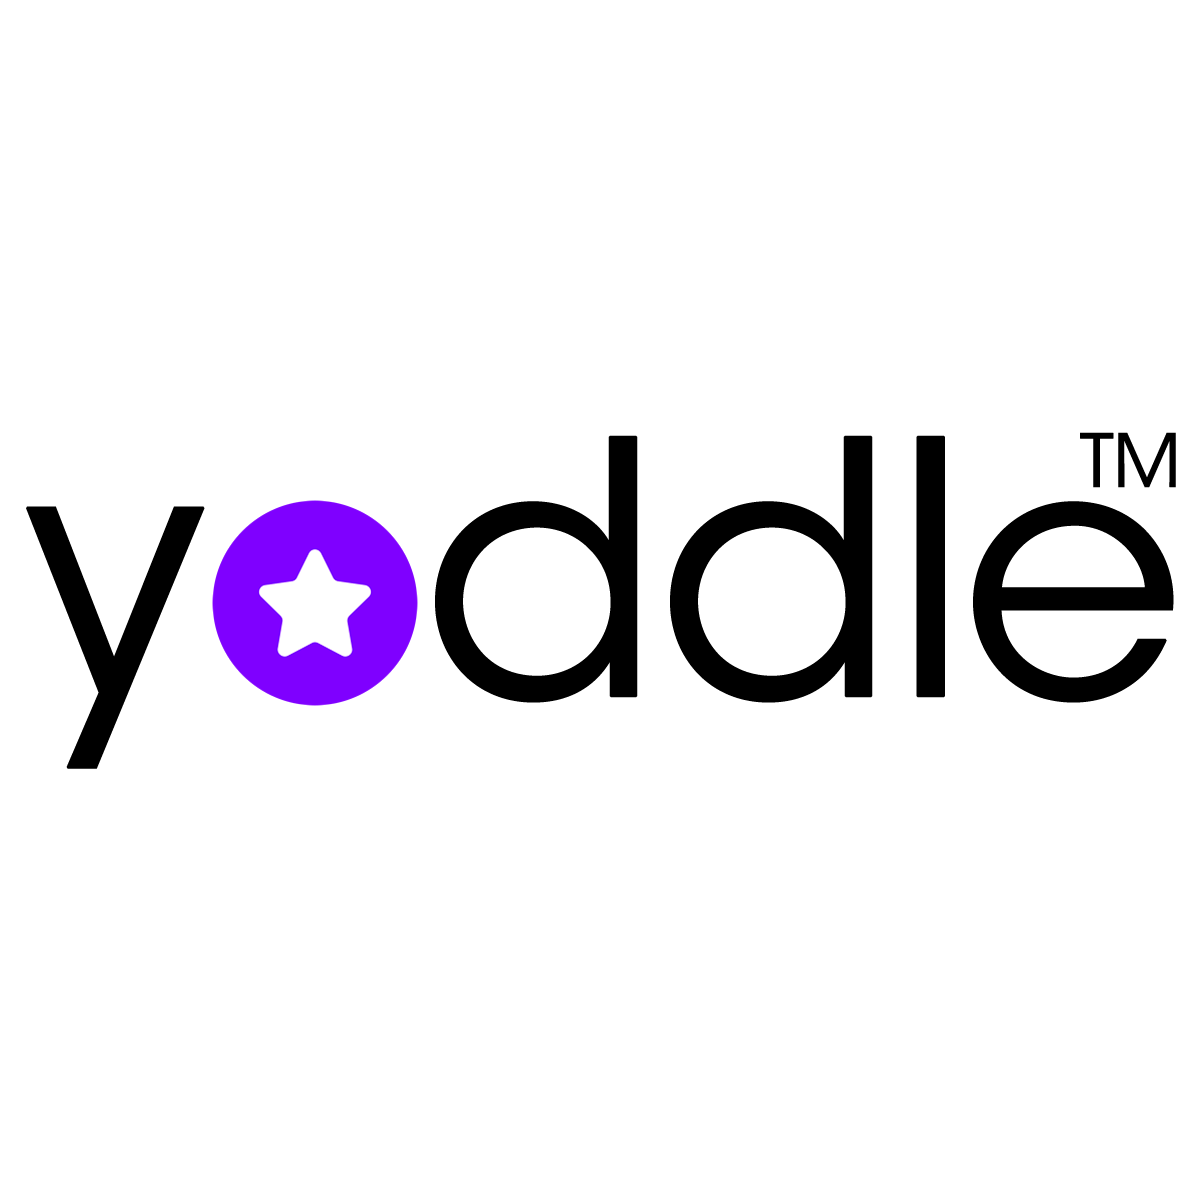 yoddle_logo_shopify_partner_portal_TM.fw.png